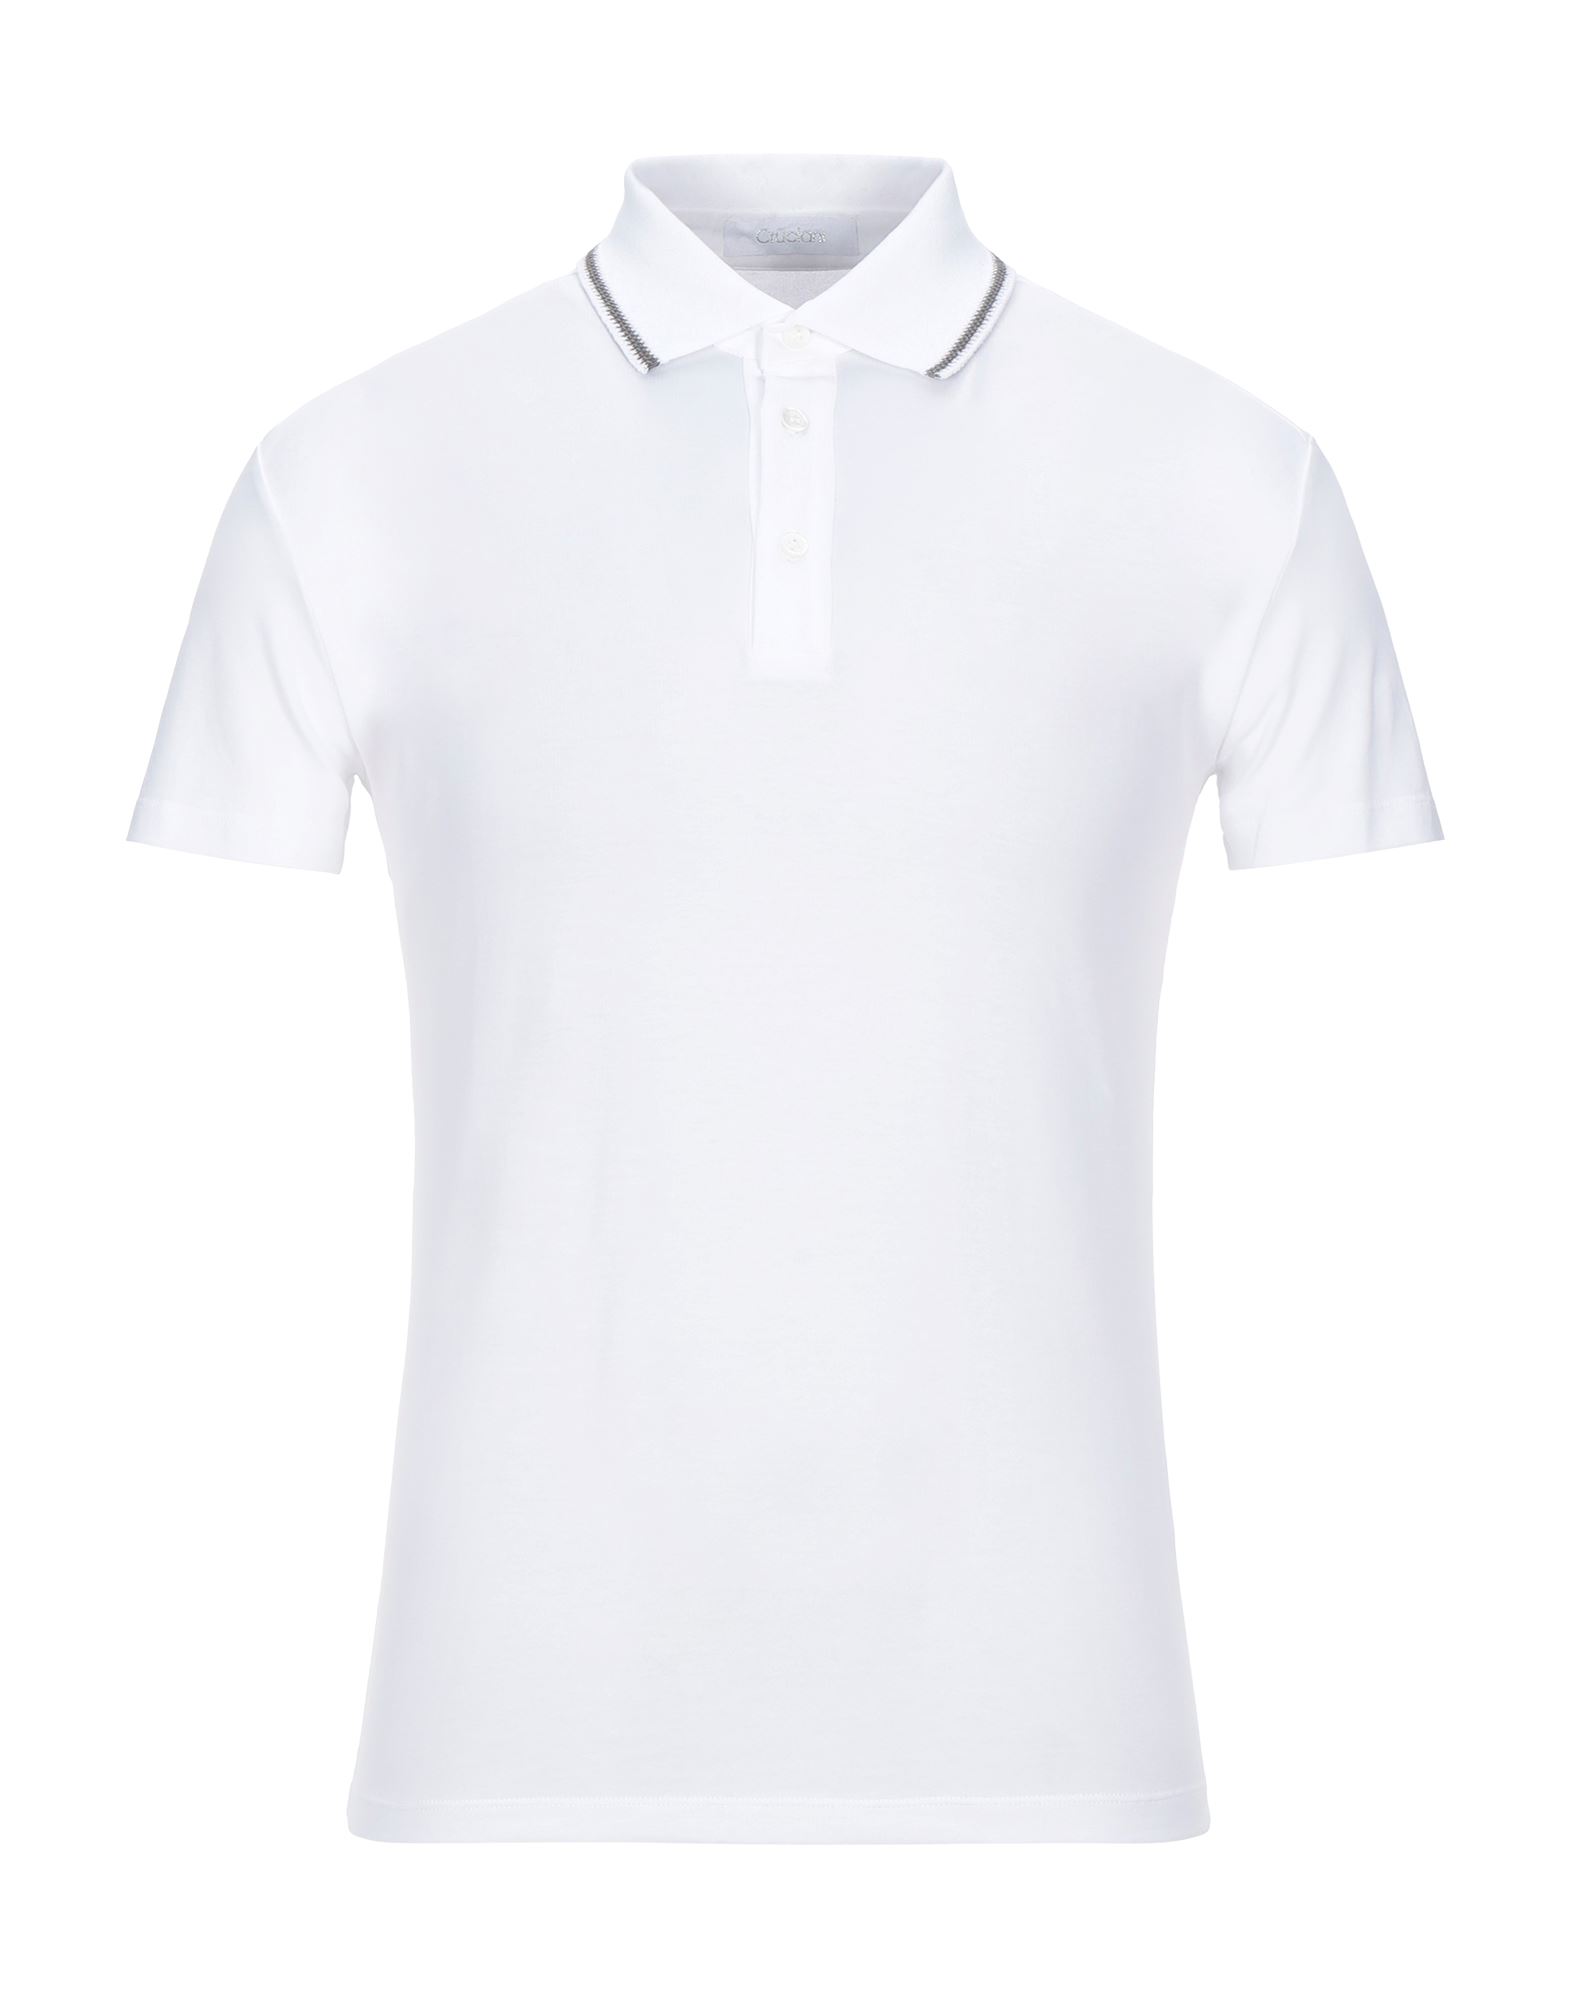 クルチアーニ(Cruciani) メンズポロシャツ | 通販・人気ランキング 